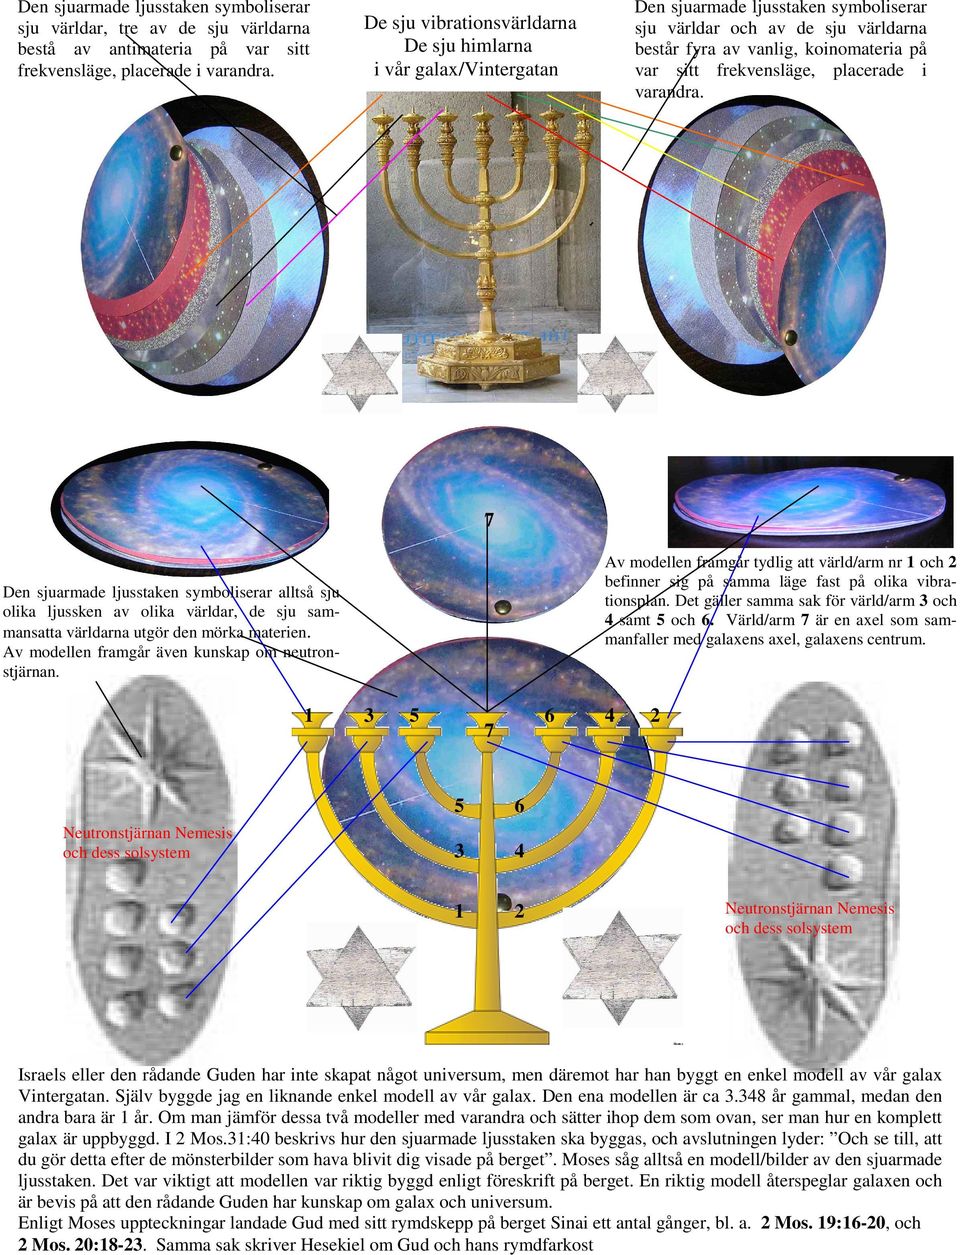 De sju vibrationsvärldarna De sju himlarna i vår galax/vintergatan Av modellen framgår tydlig att värld/arm nr 1 och 2 befinner sig på samma läge fast på olika vibrationsplan.